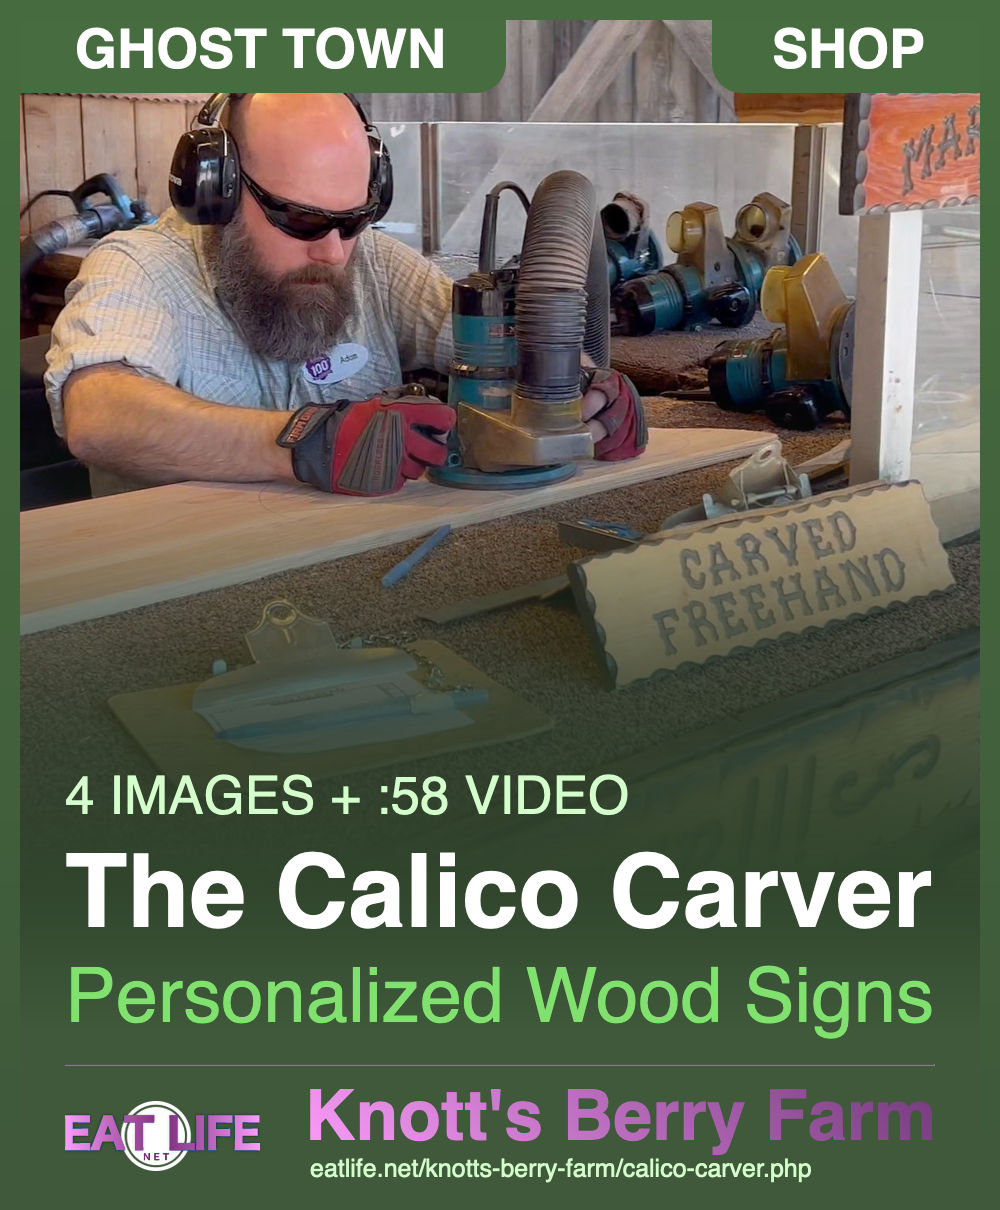 Calico Carver